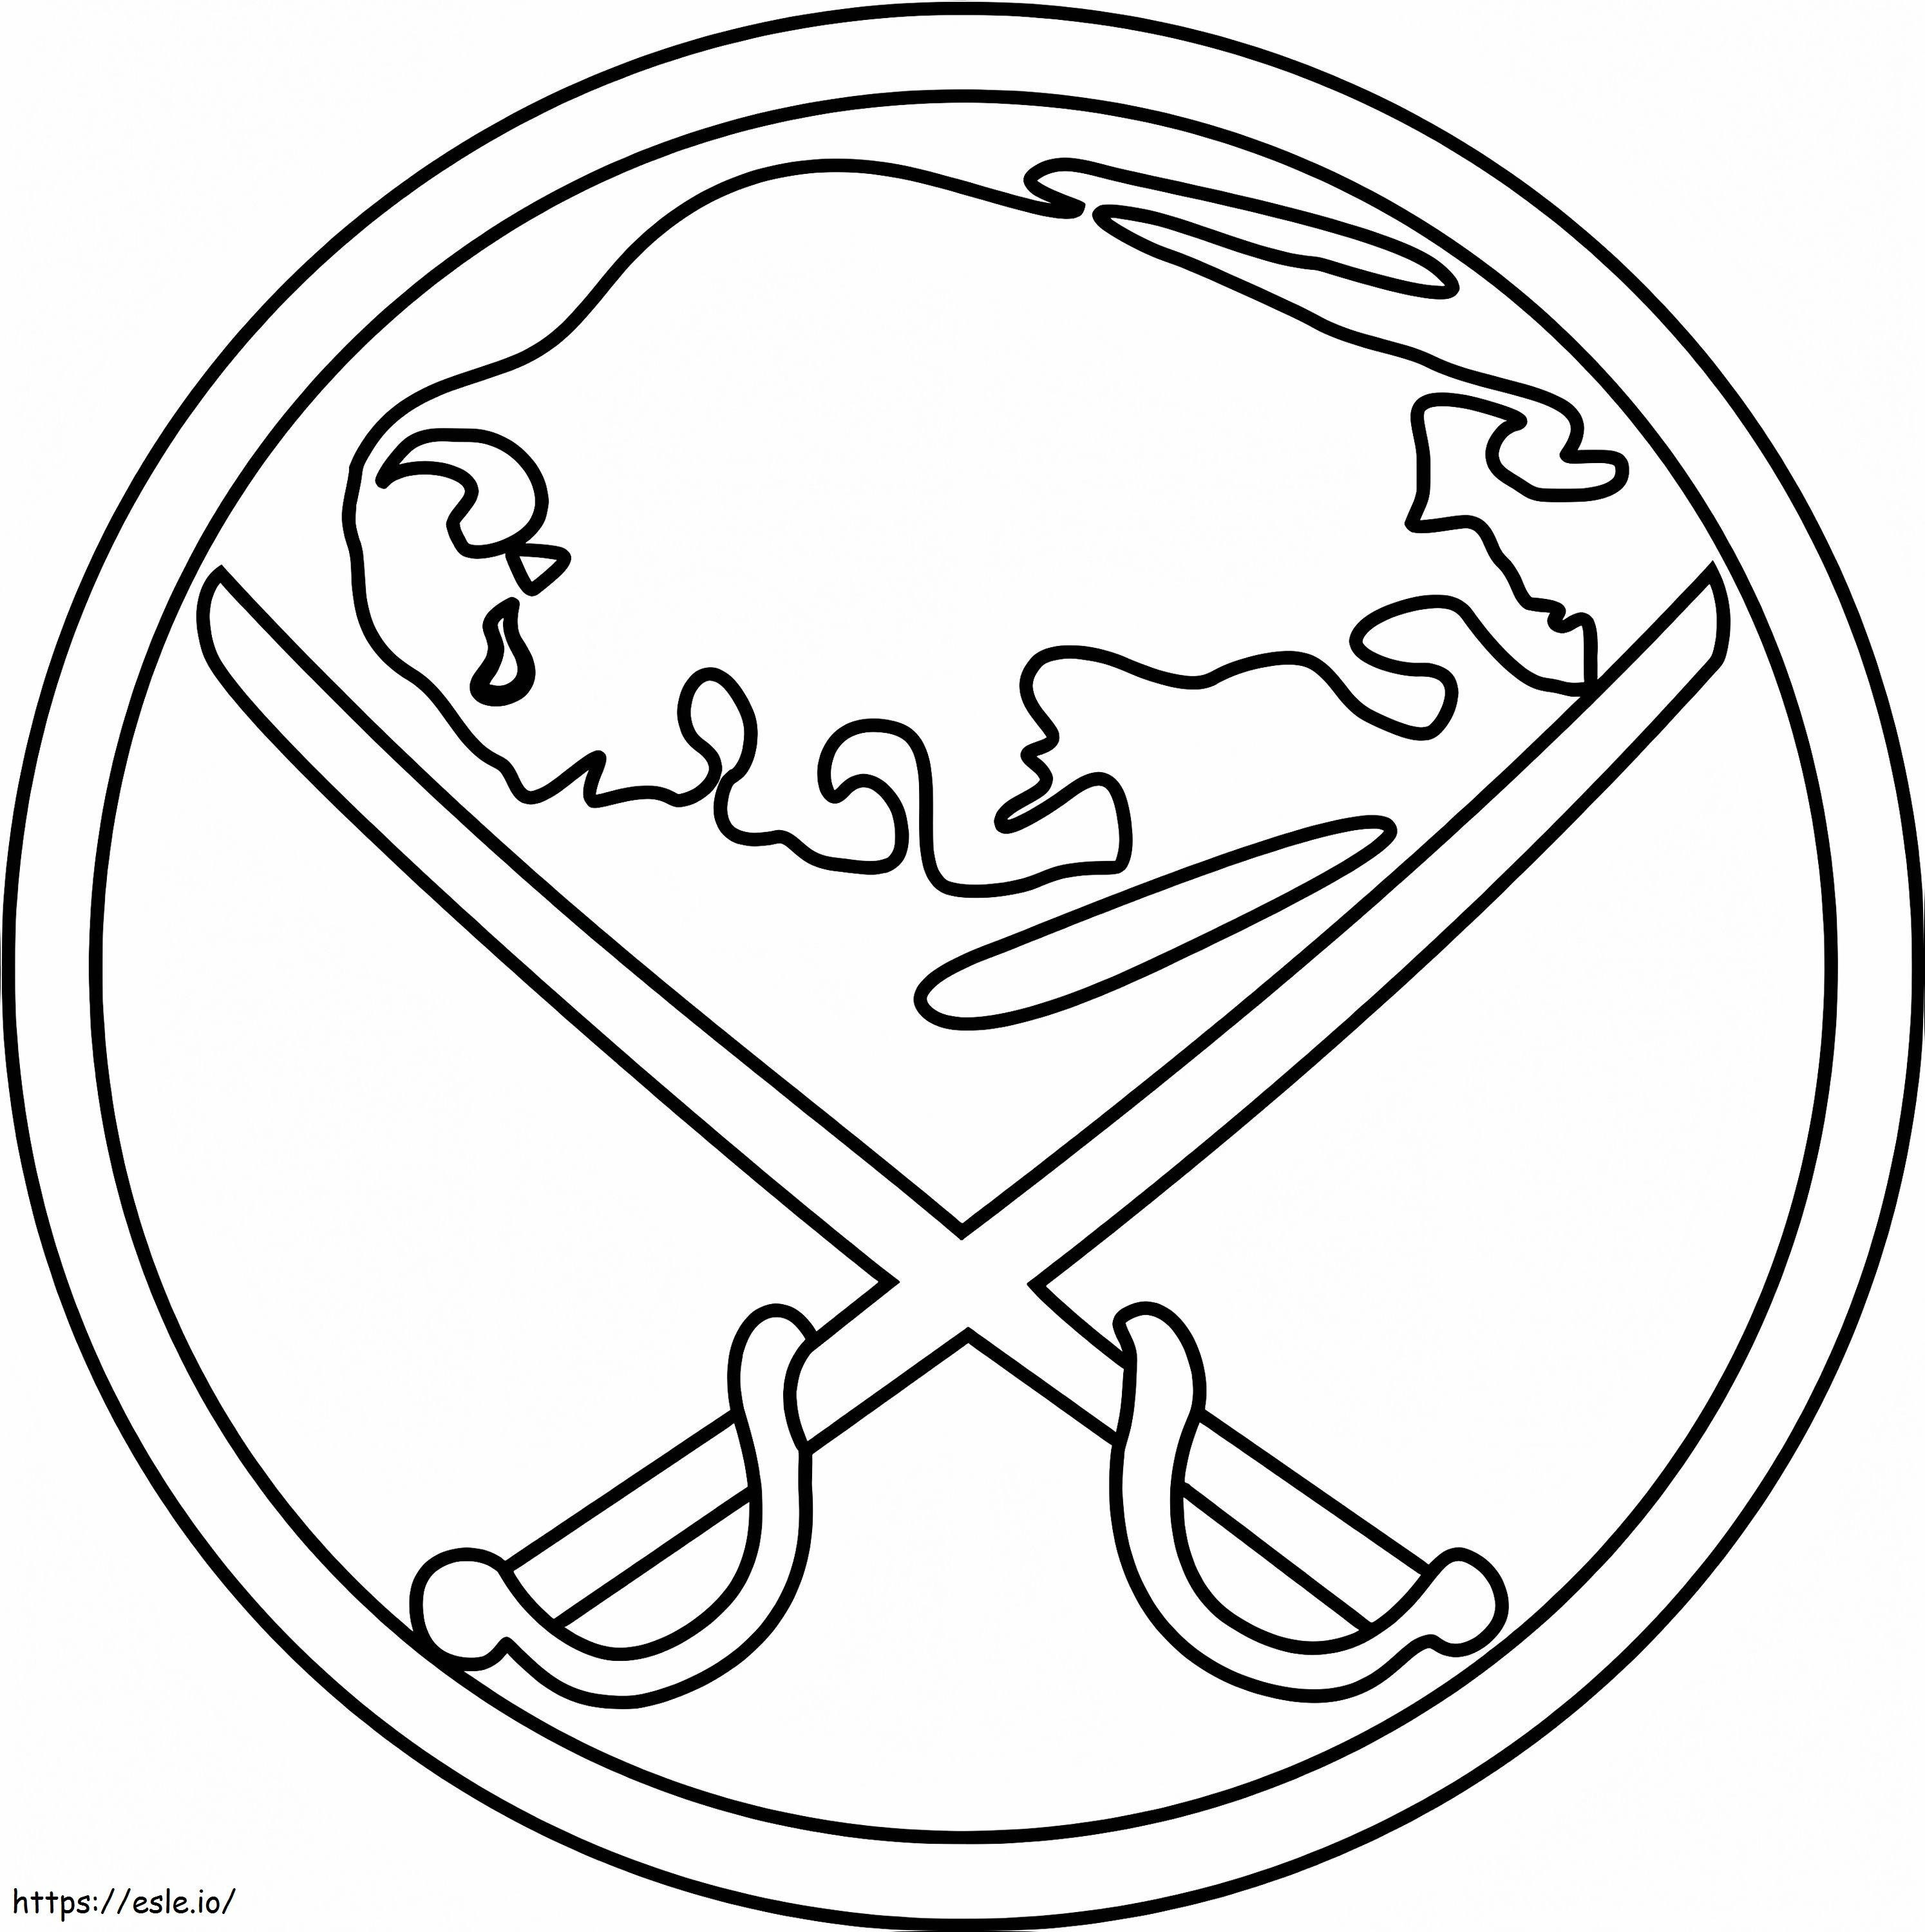 Buffalo Sabres-Logo ausmalbilder